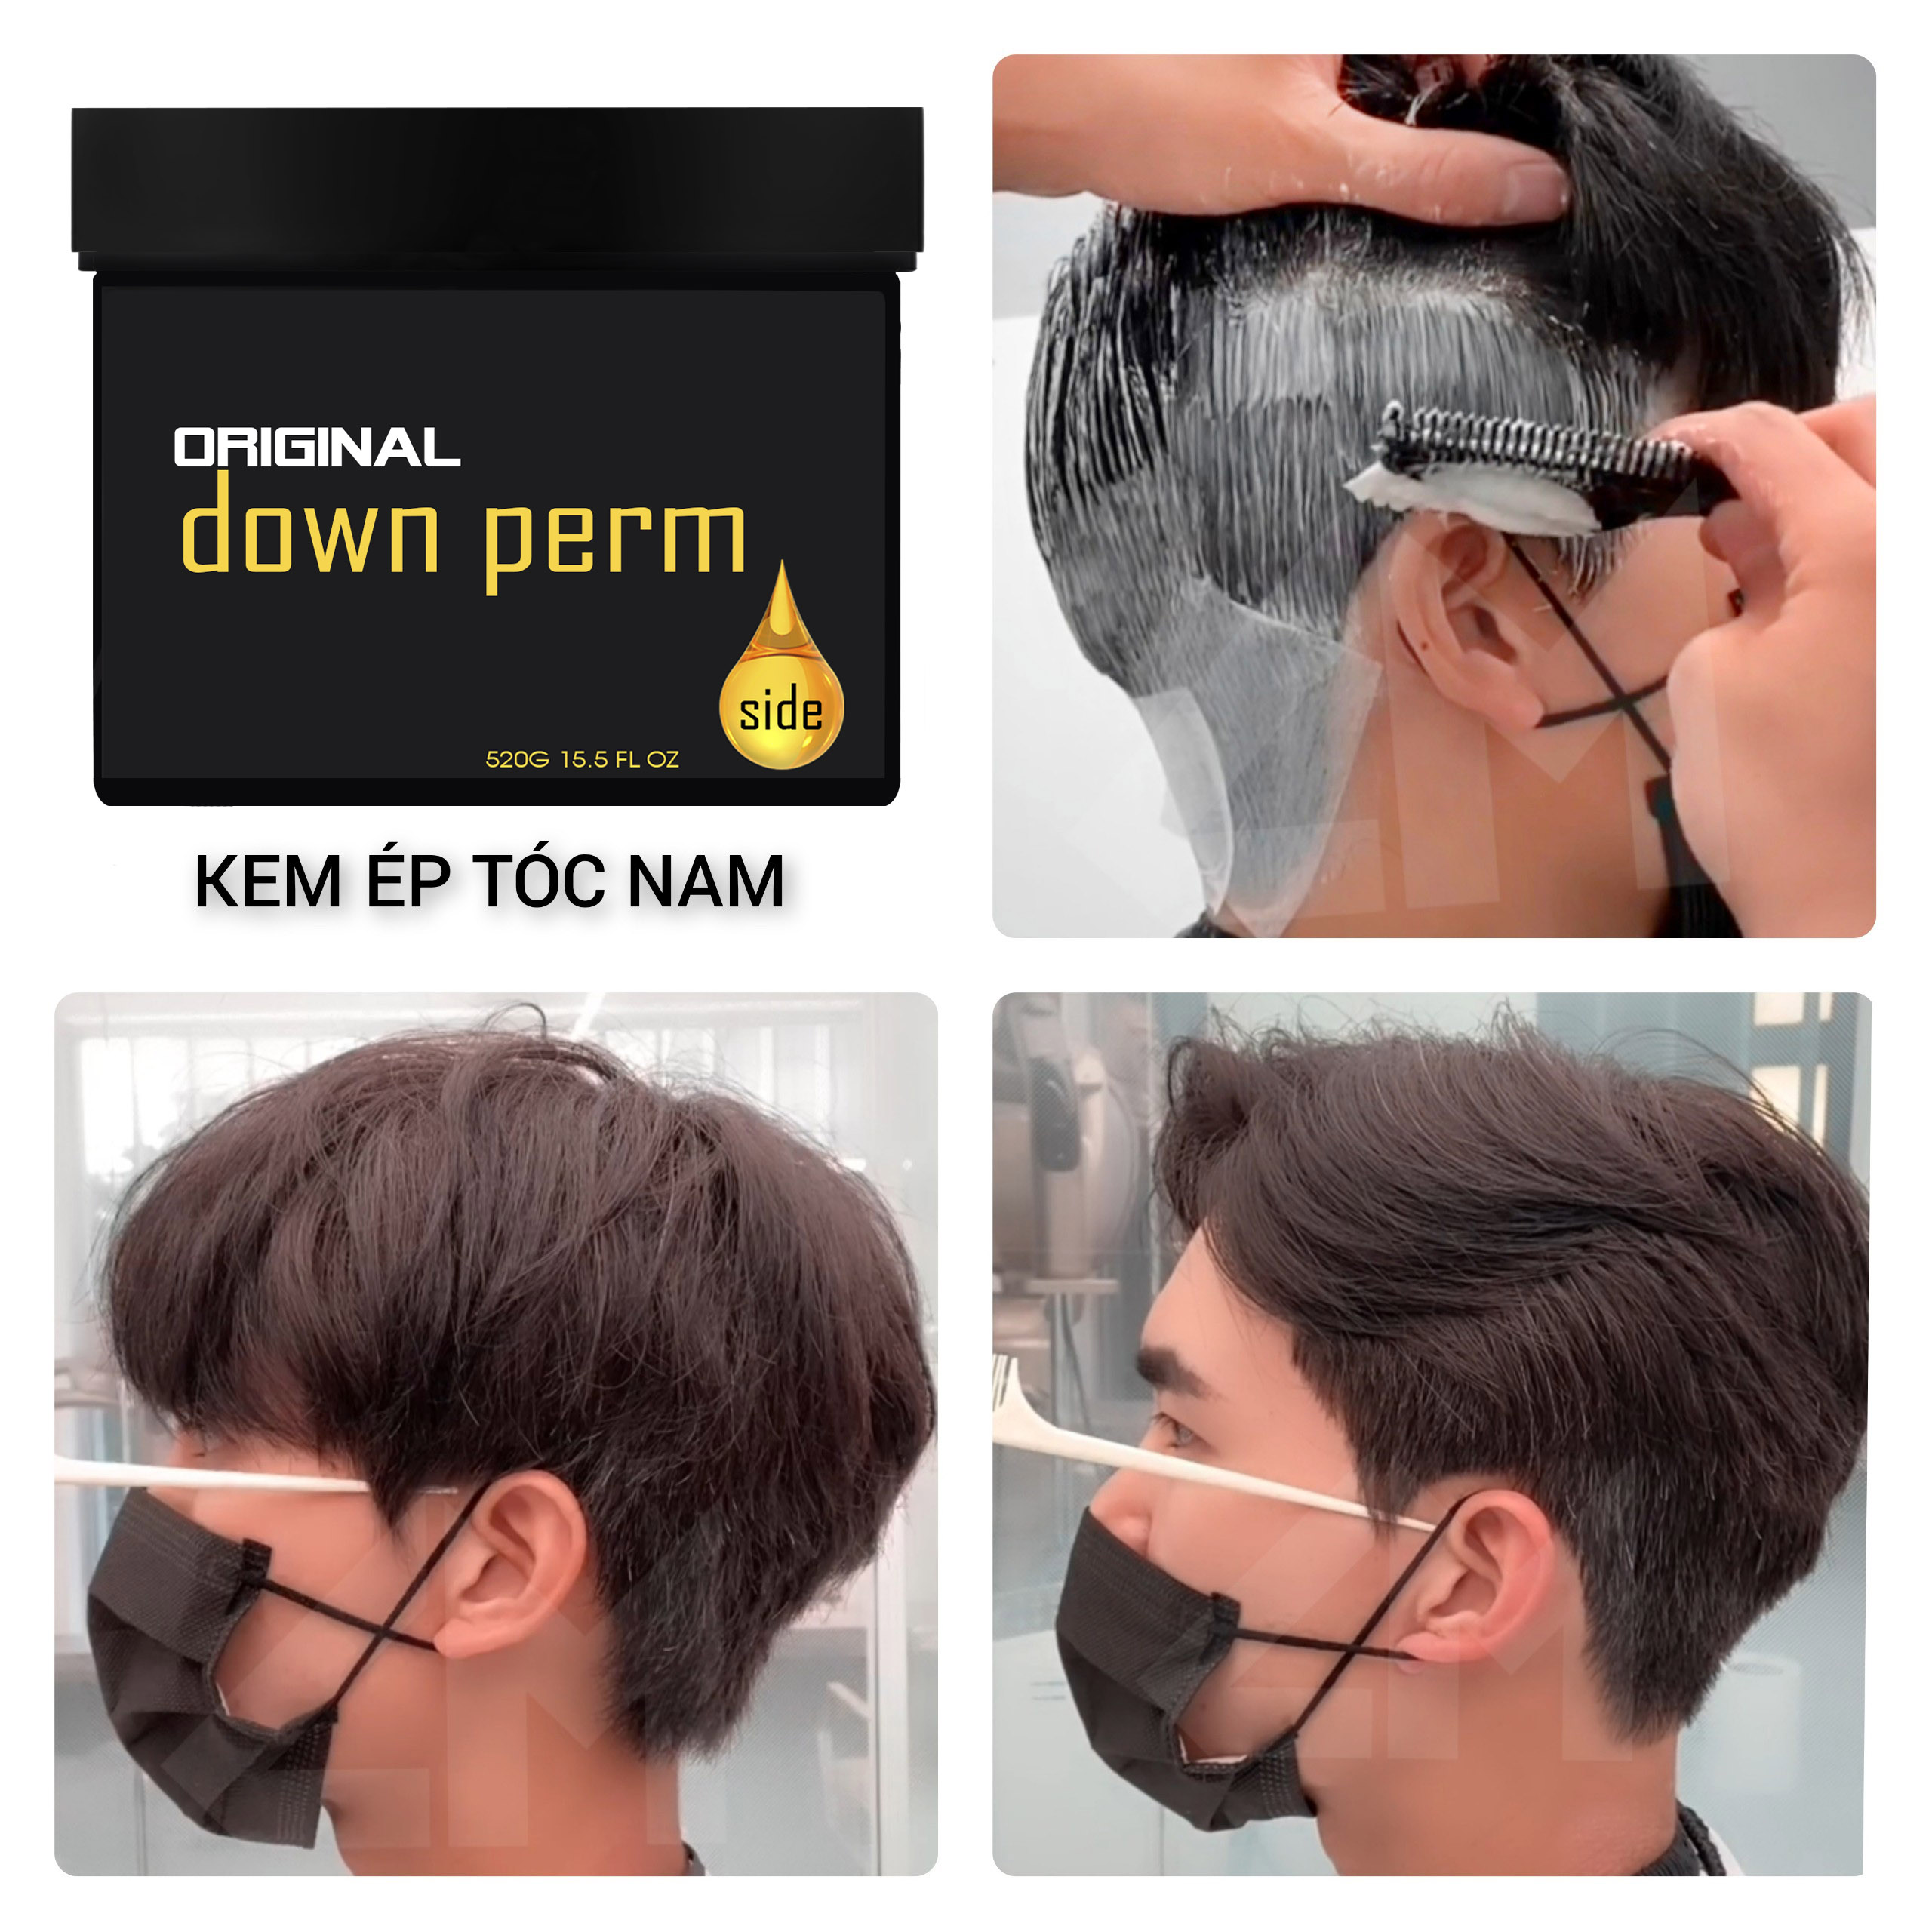 Hướng dẫn tạo kiểu tóc Nam tại nhà bằng máy kẹp tóc mini koria - YouTube